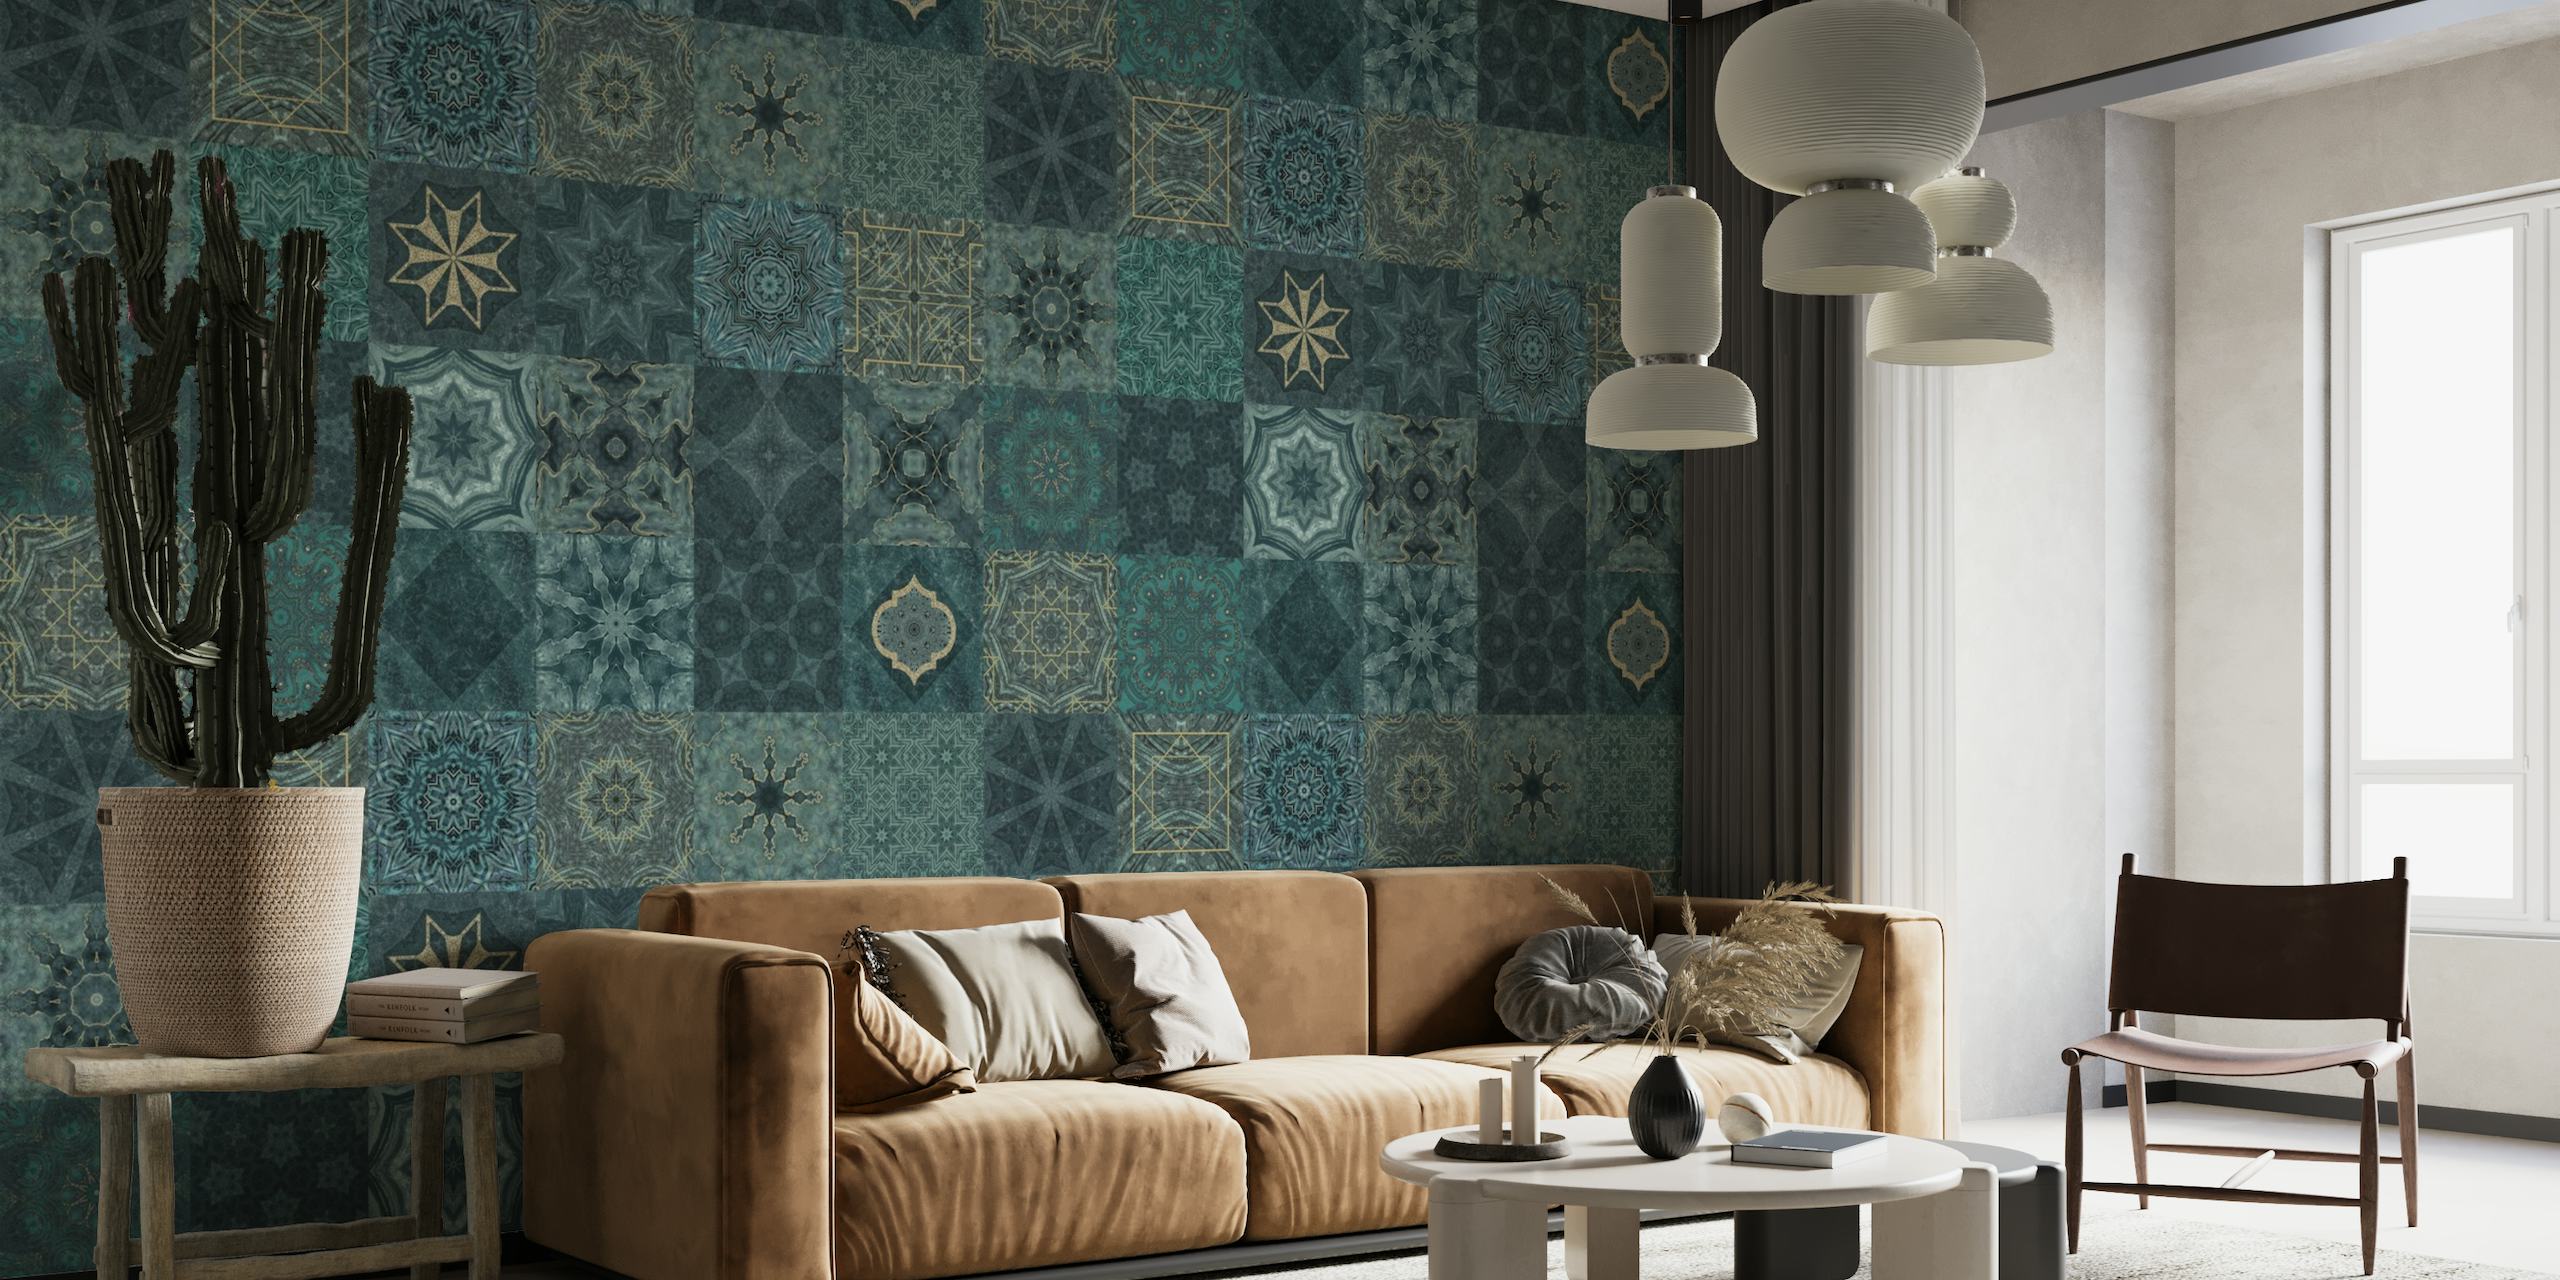 Fototapeta Oriental Mediterranean Tiles s tyrkysovými a zlatými vzory